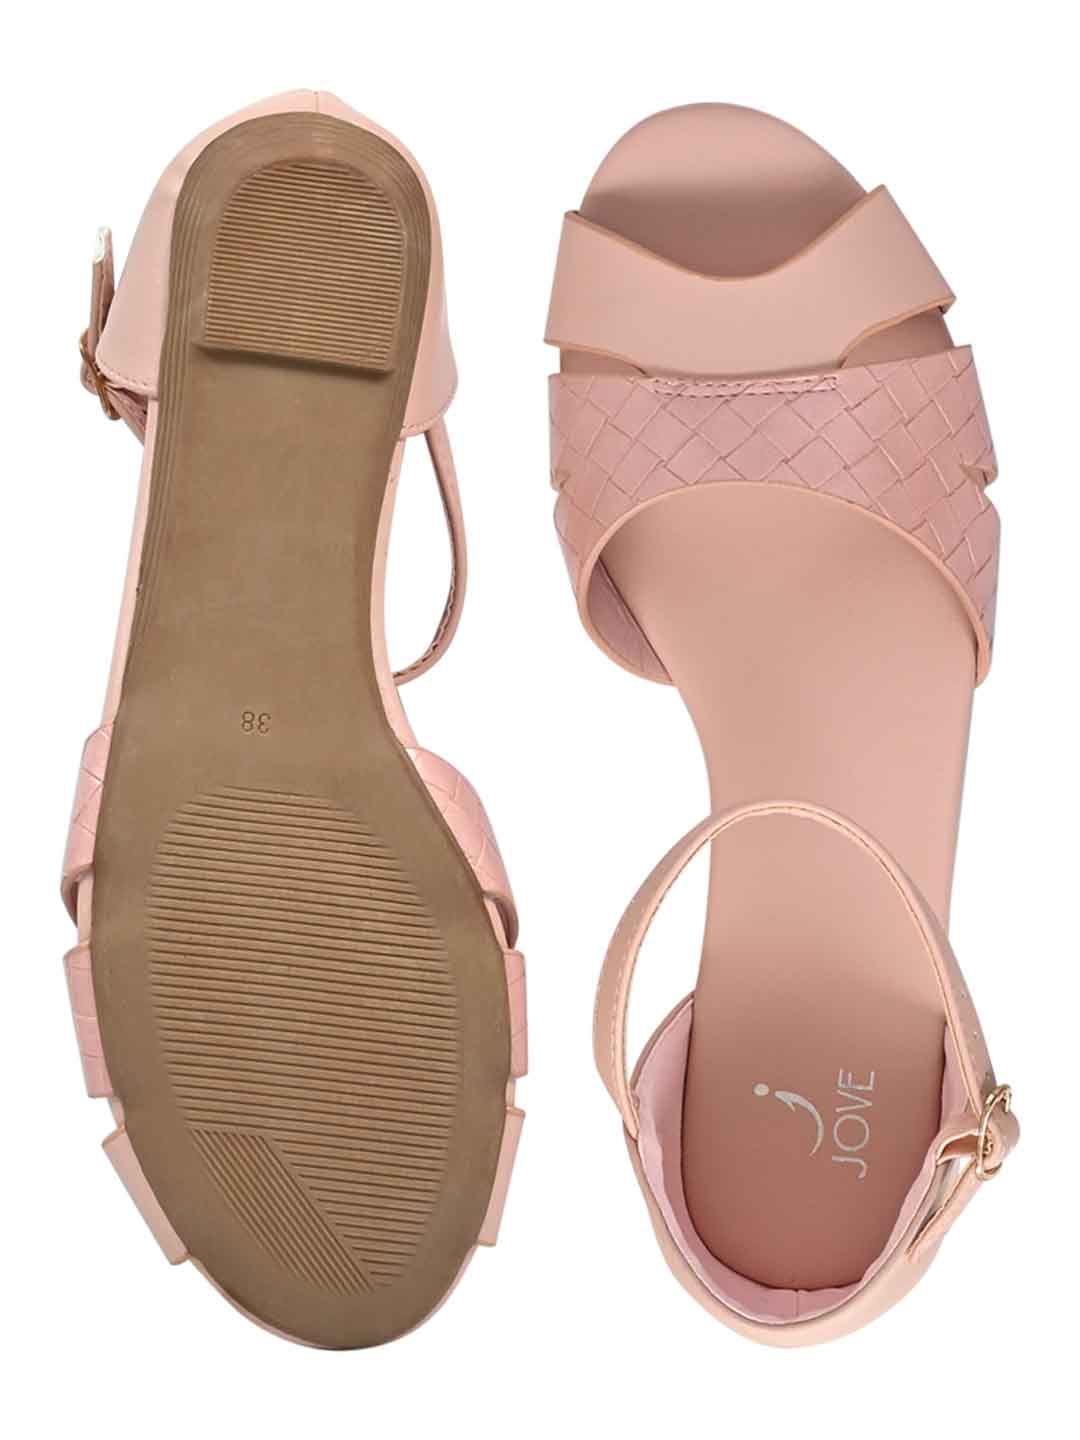 Footwear, Women Footwear, Pink Sandals